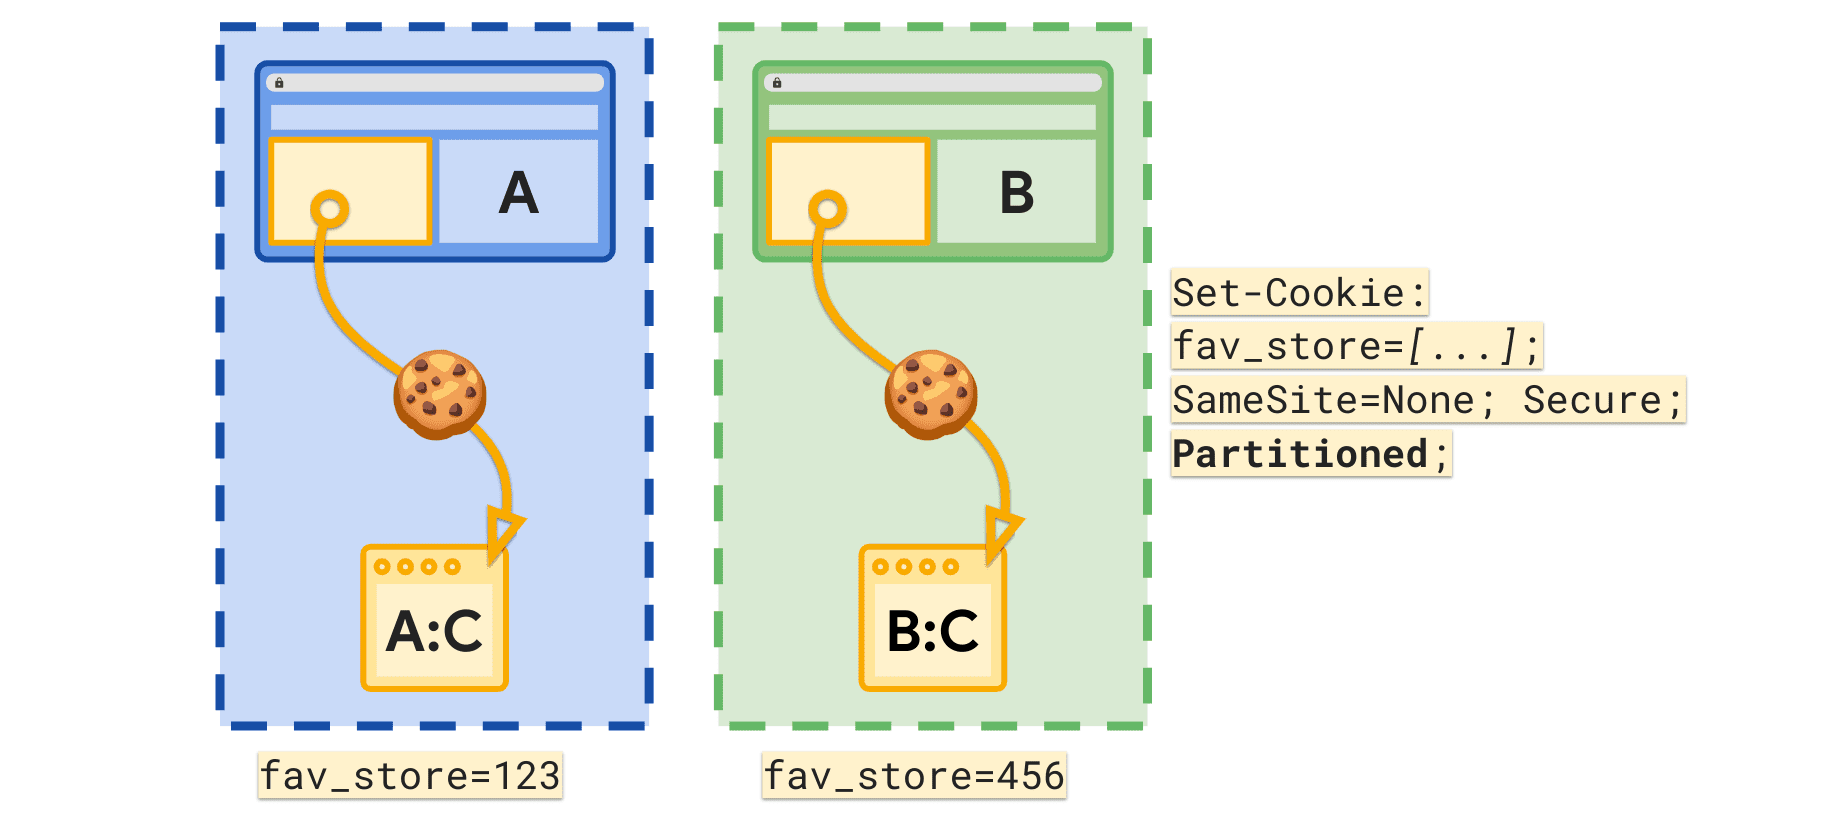 Thuộc tính được phân vùng cho phép thiết lập một cookie fav_store riêng biệt cho từng trang web cấp cao nhất.